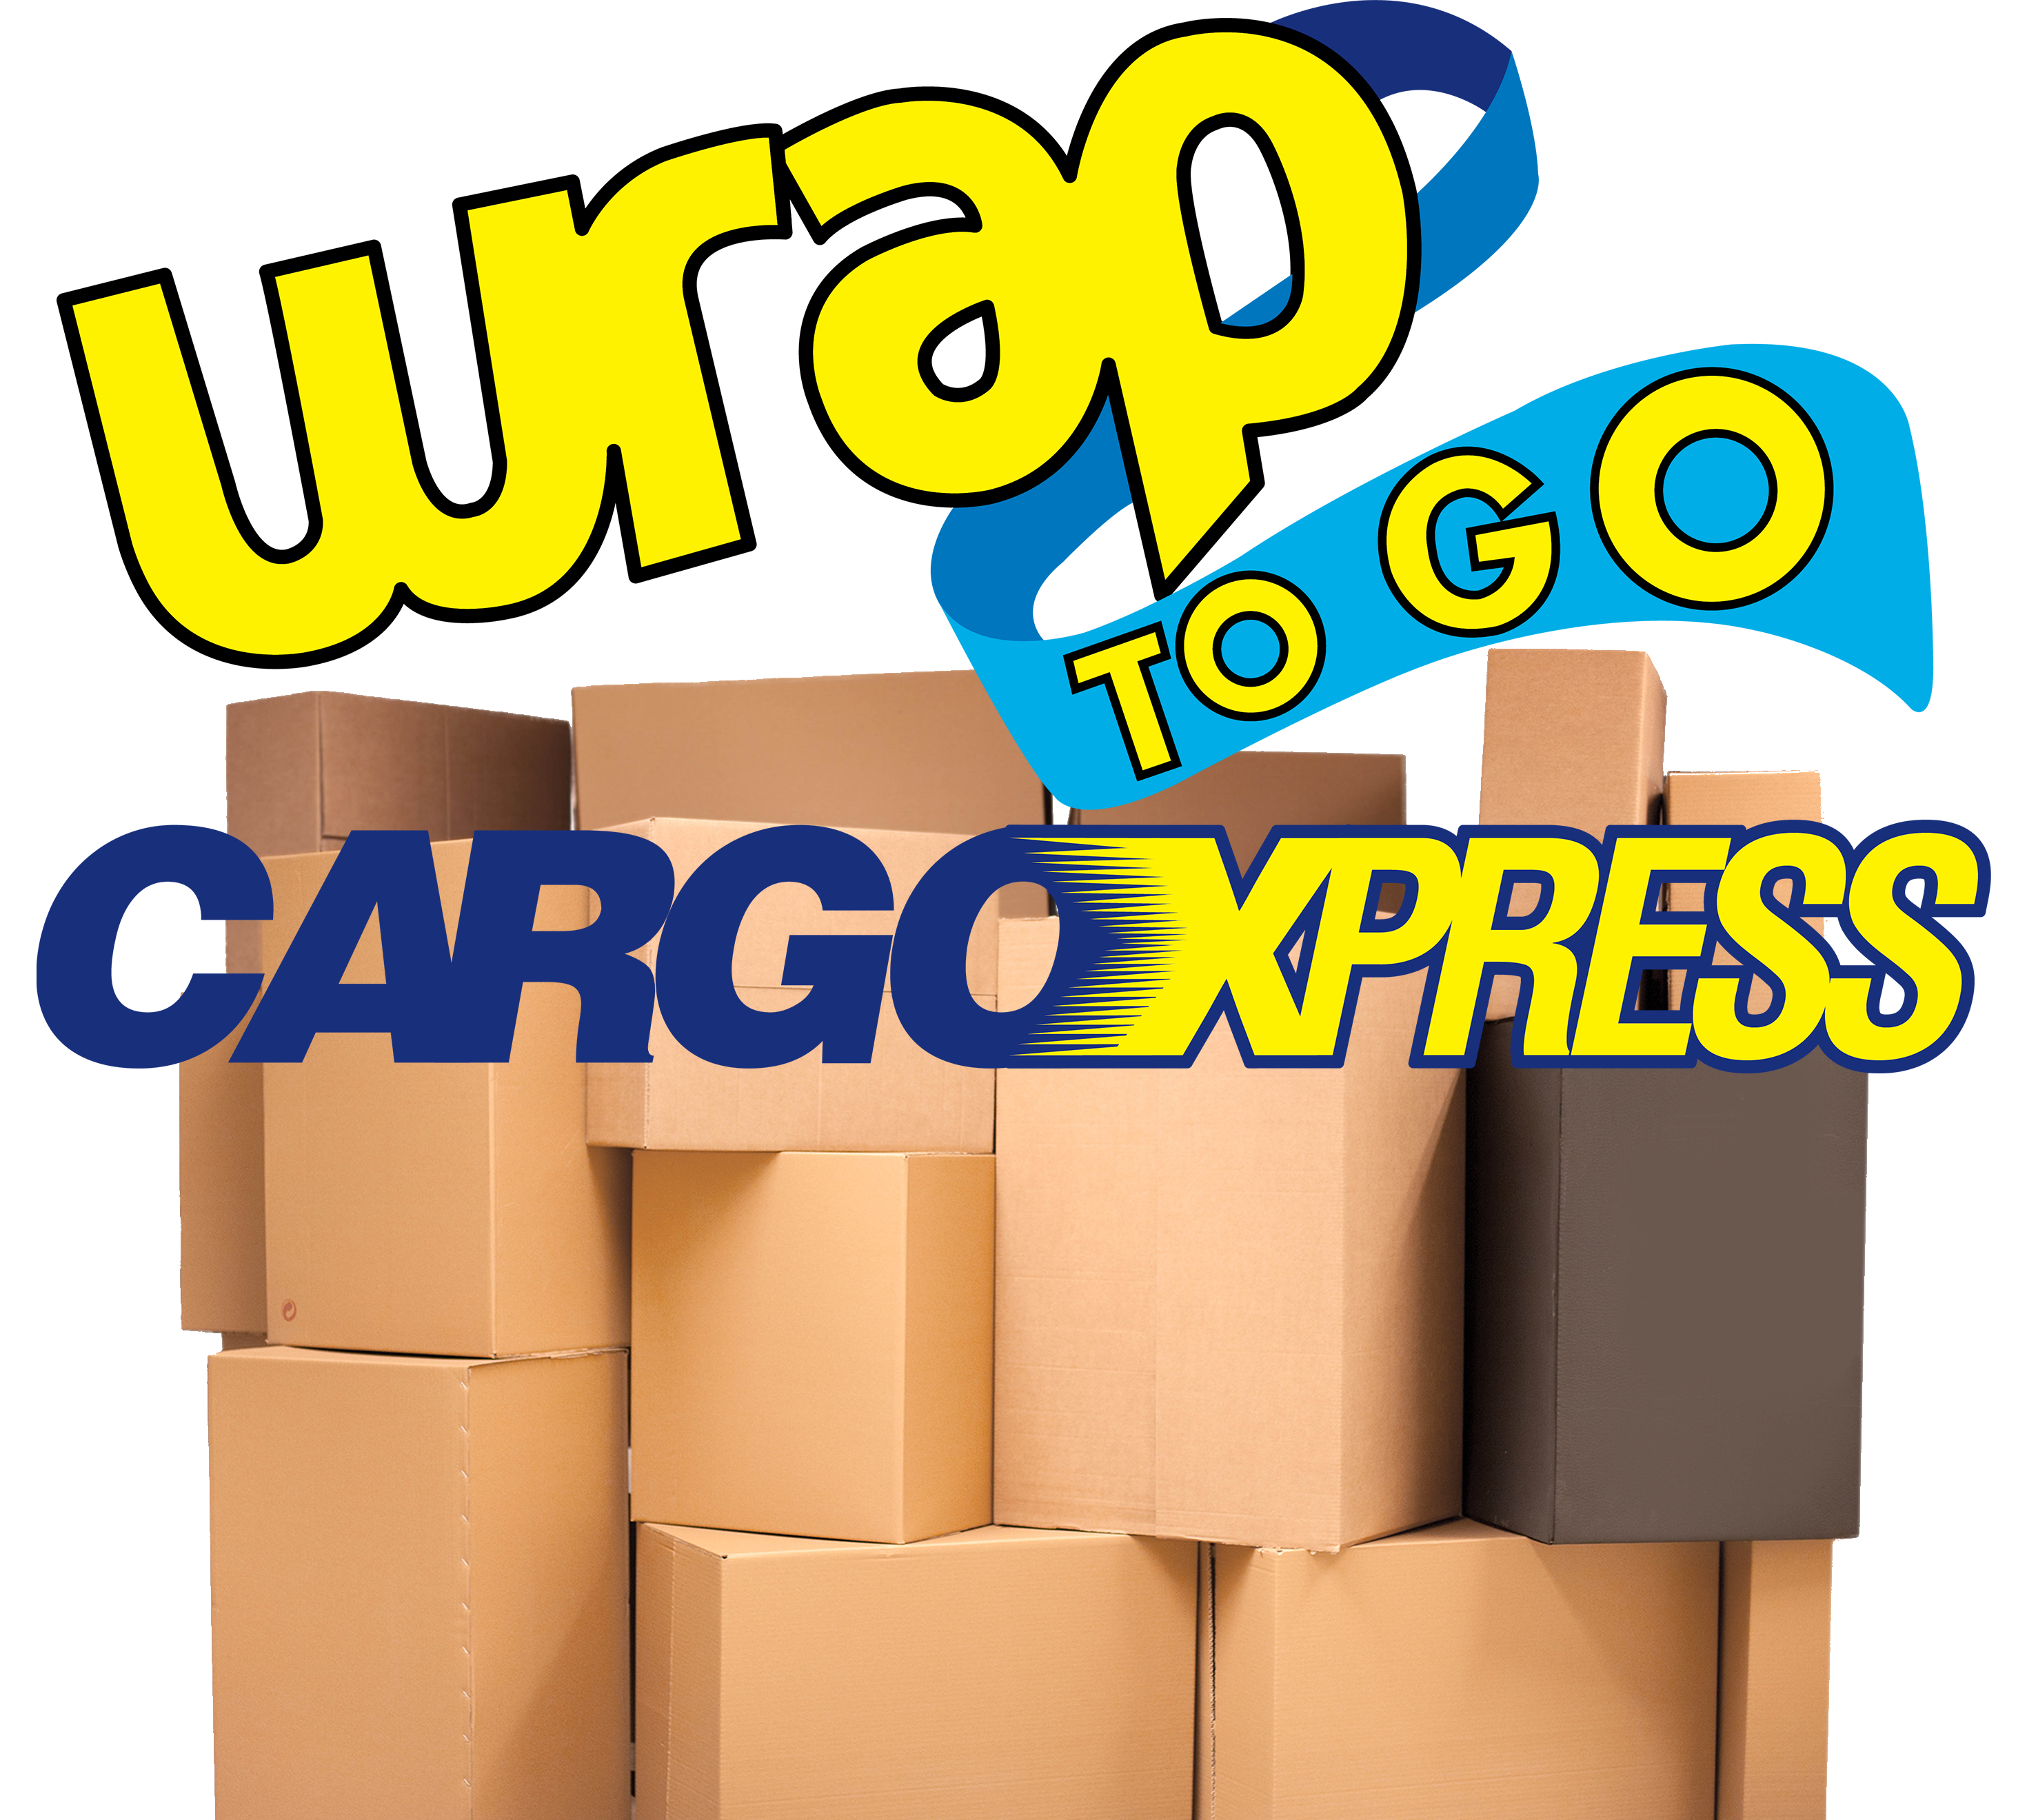 Door to Door Service CargoXpress | Wrap to go